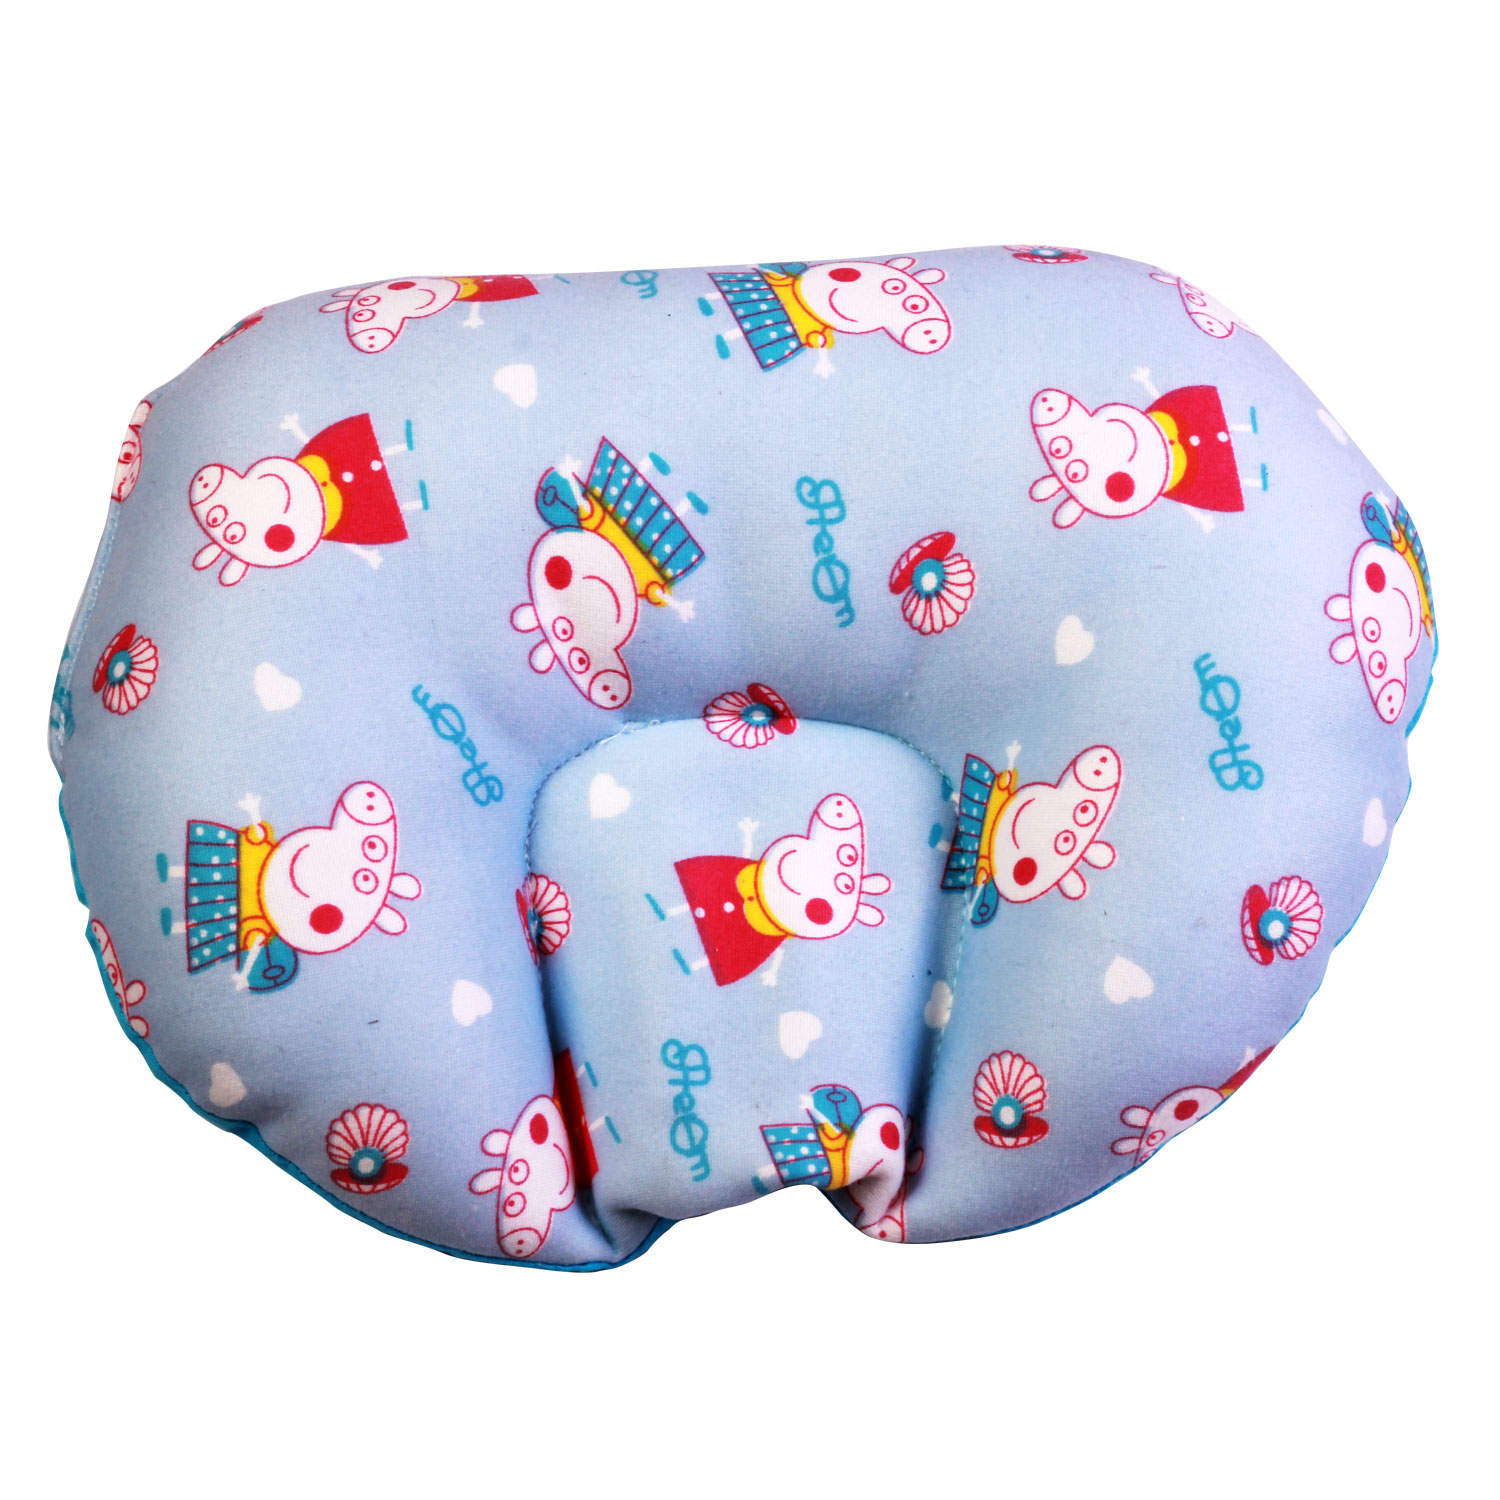 rai pillow for newborn baby